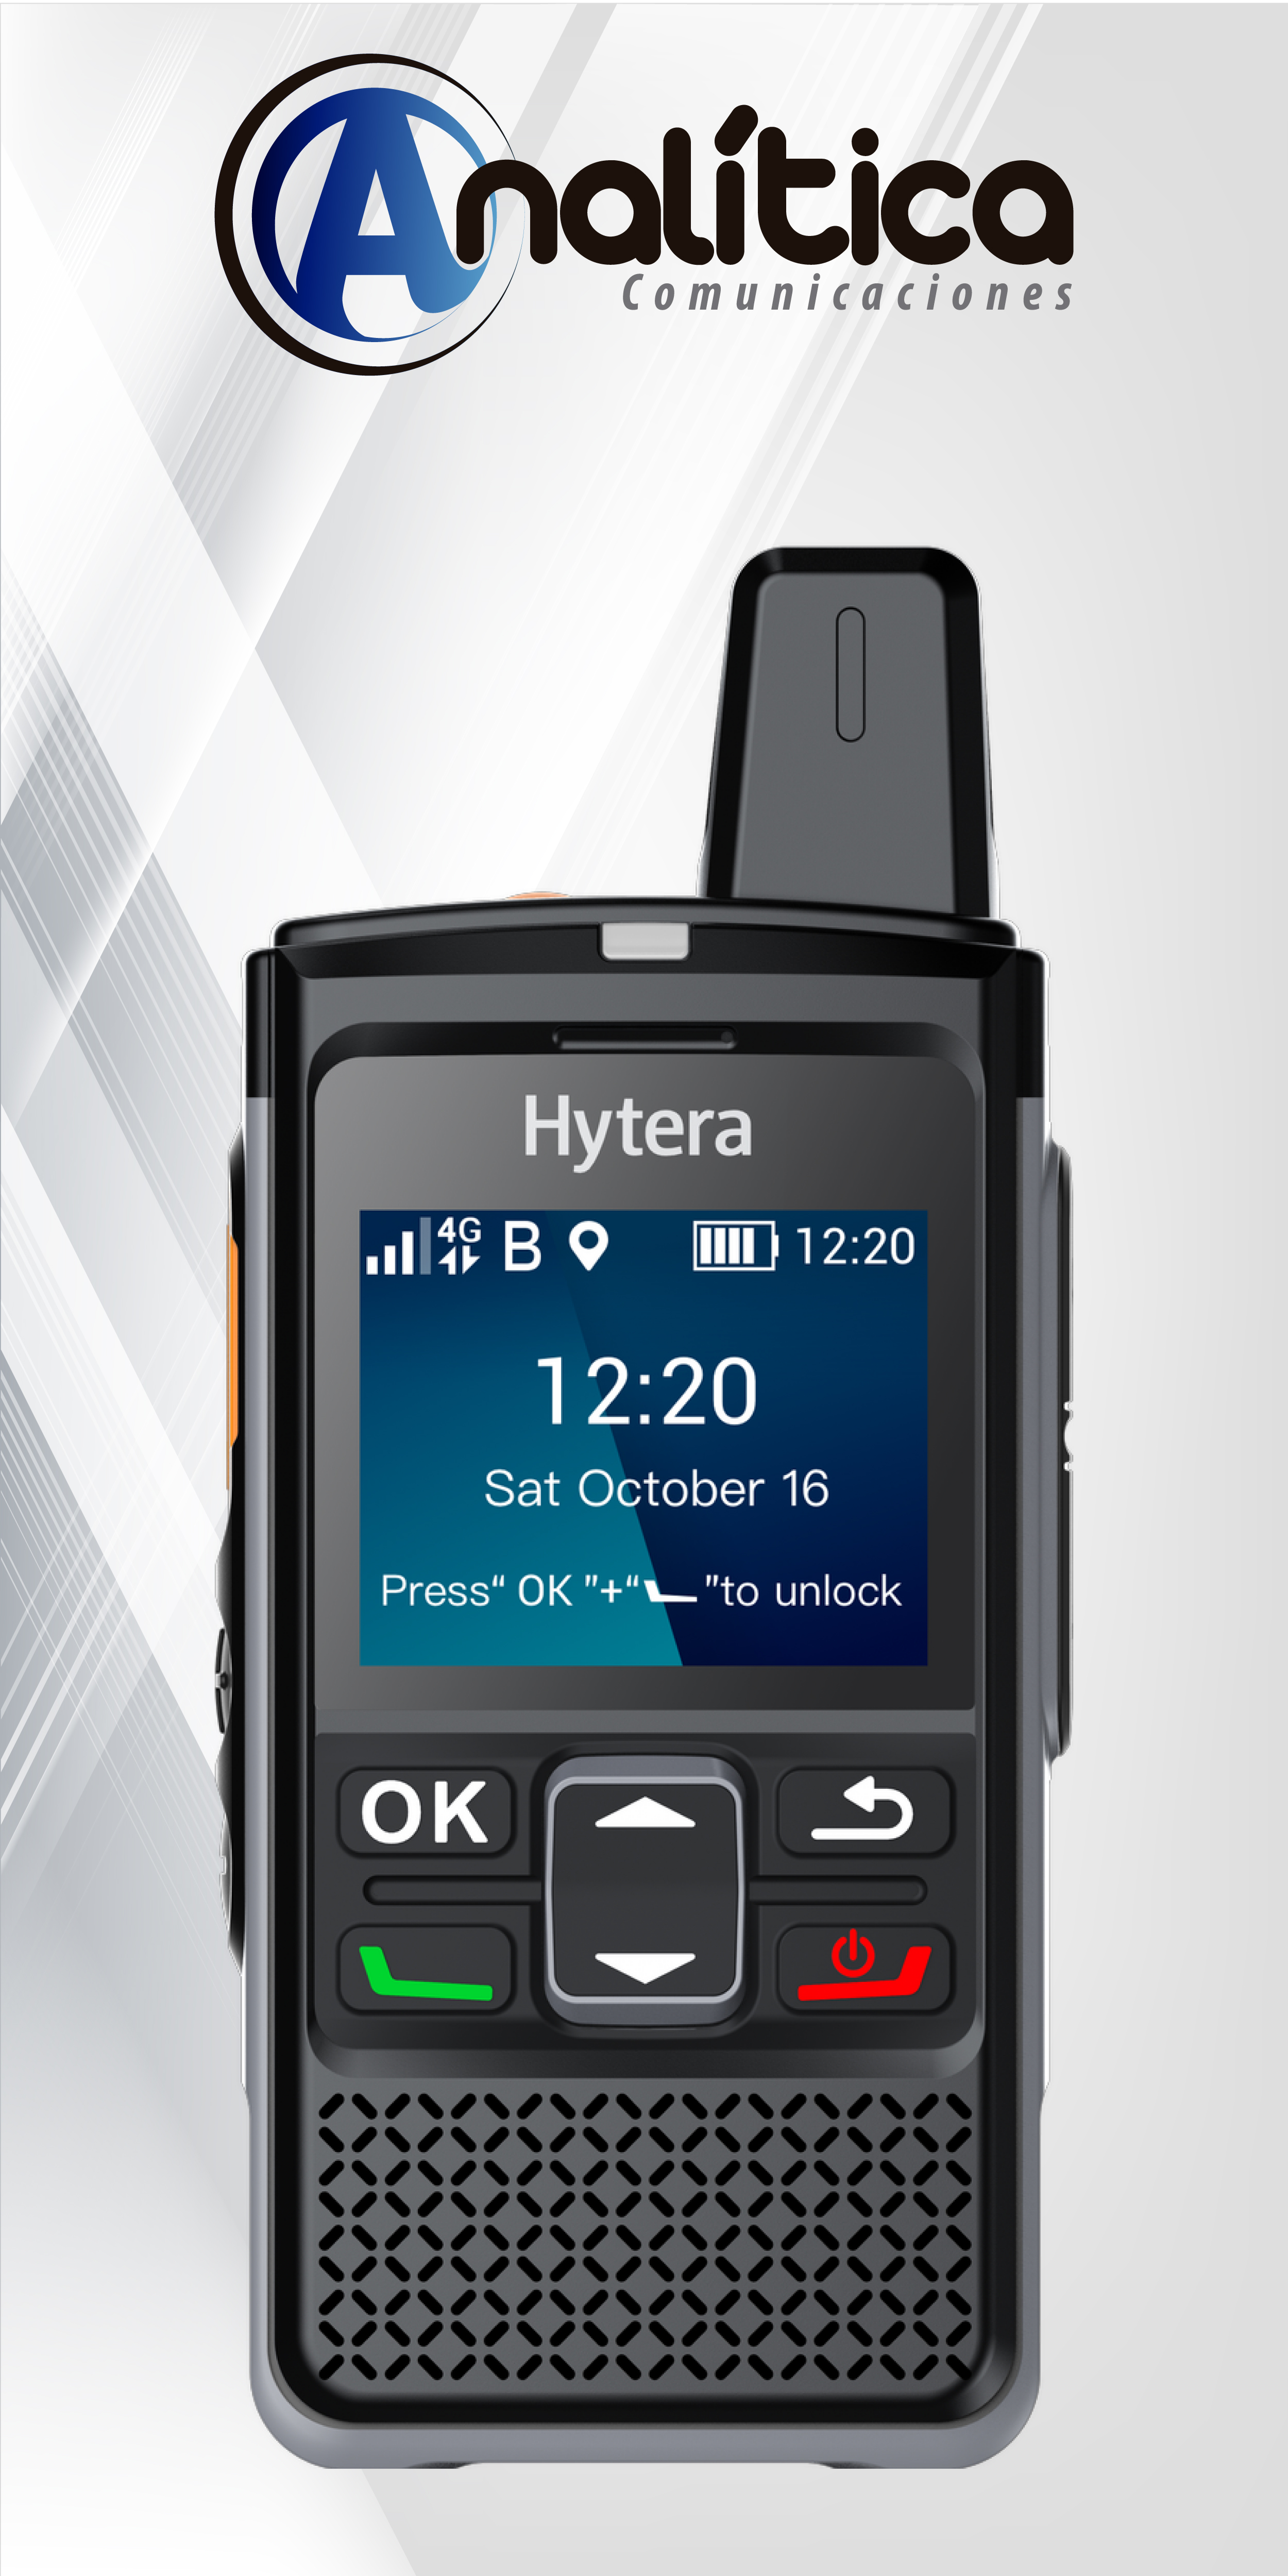 Radioteléfono PoC Hytera PNC360S